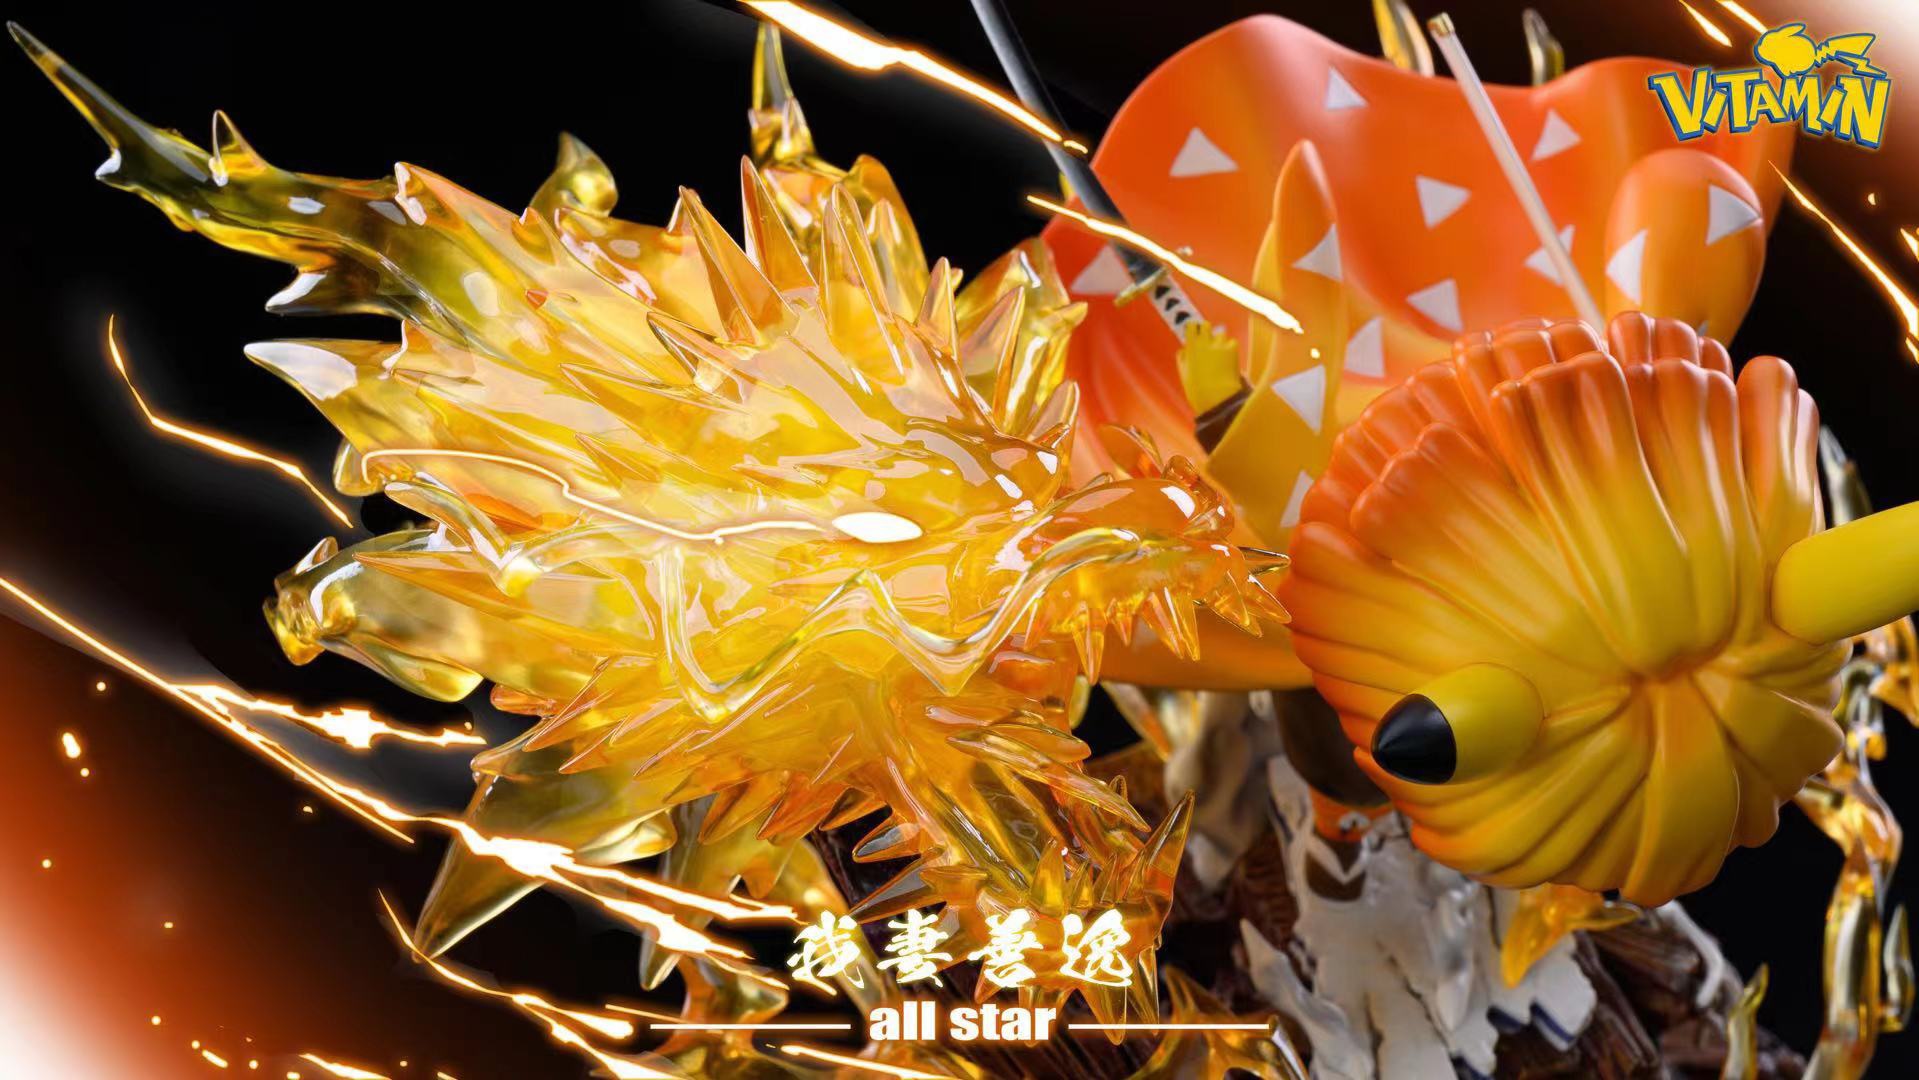 Zenitsu cos Pikachu เซนอิทซึ คอส ปิกาจู by Vitamin (มัดจำ) [[SOLD OUT]]